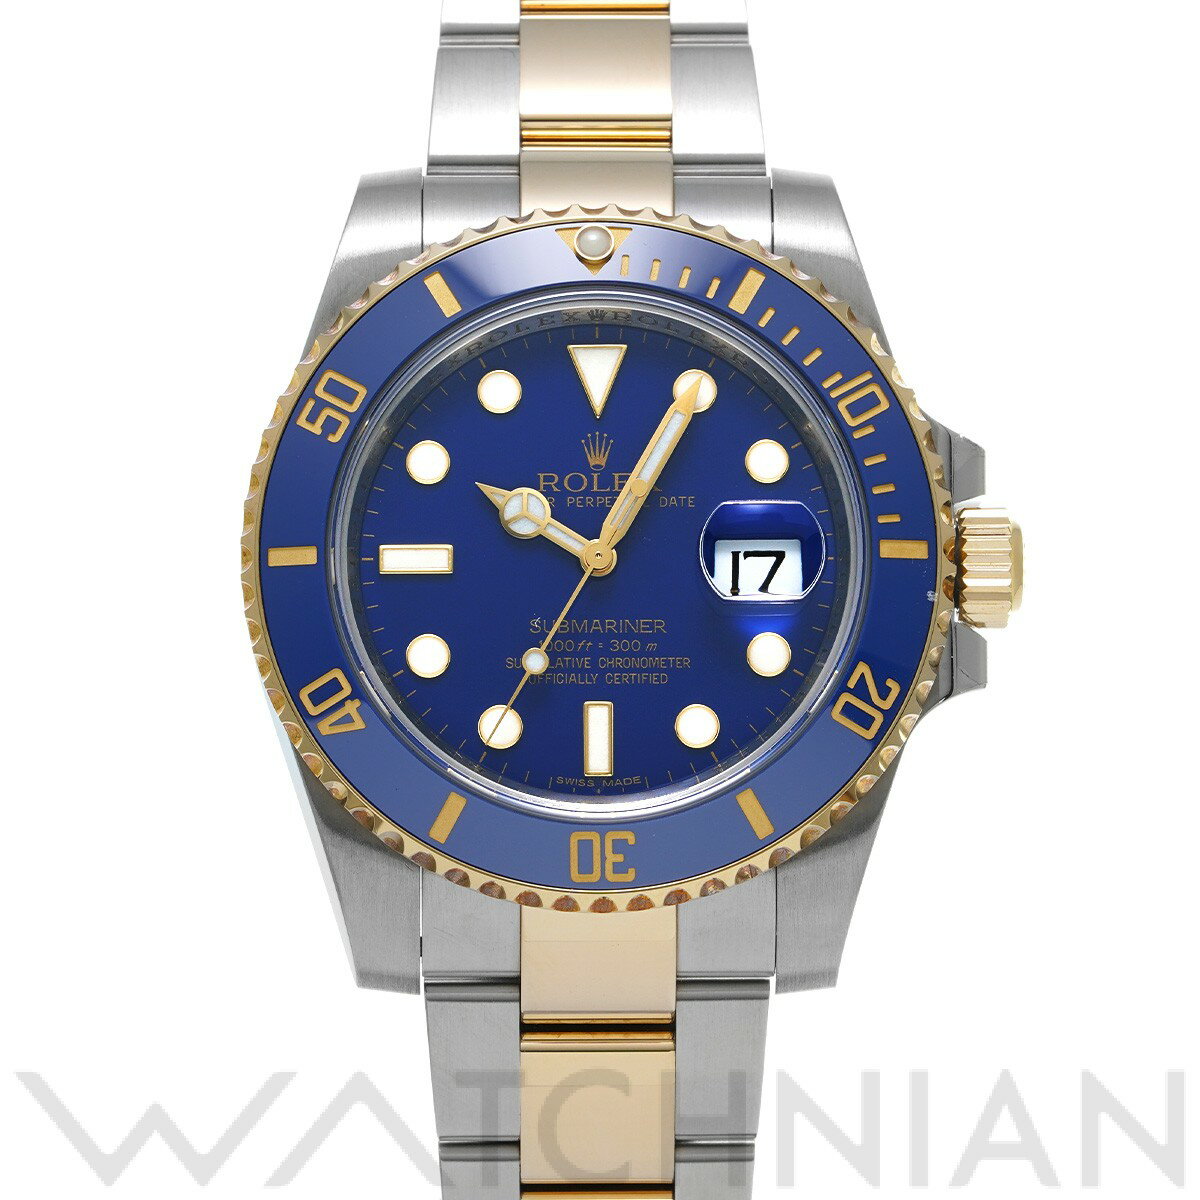 【中古】 ロレックス ROLEX サブマリーナ デイト 116613LB V番(2009年頃製造) マットブルー メンズ 腕時計